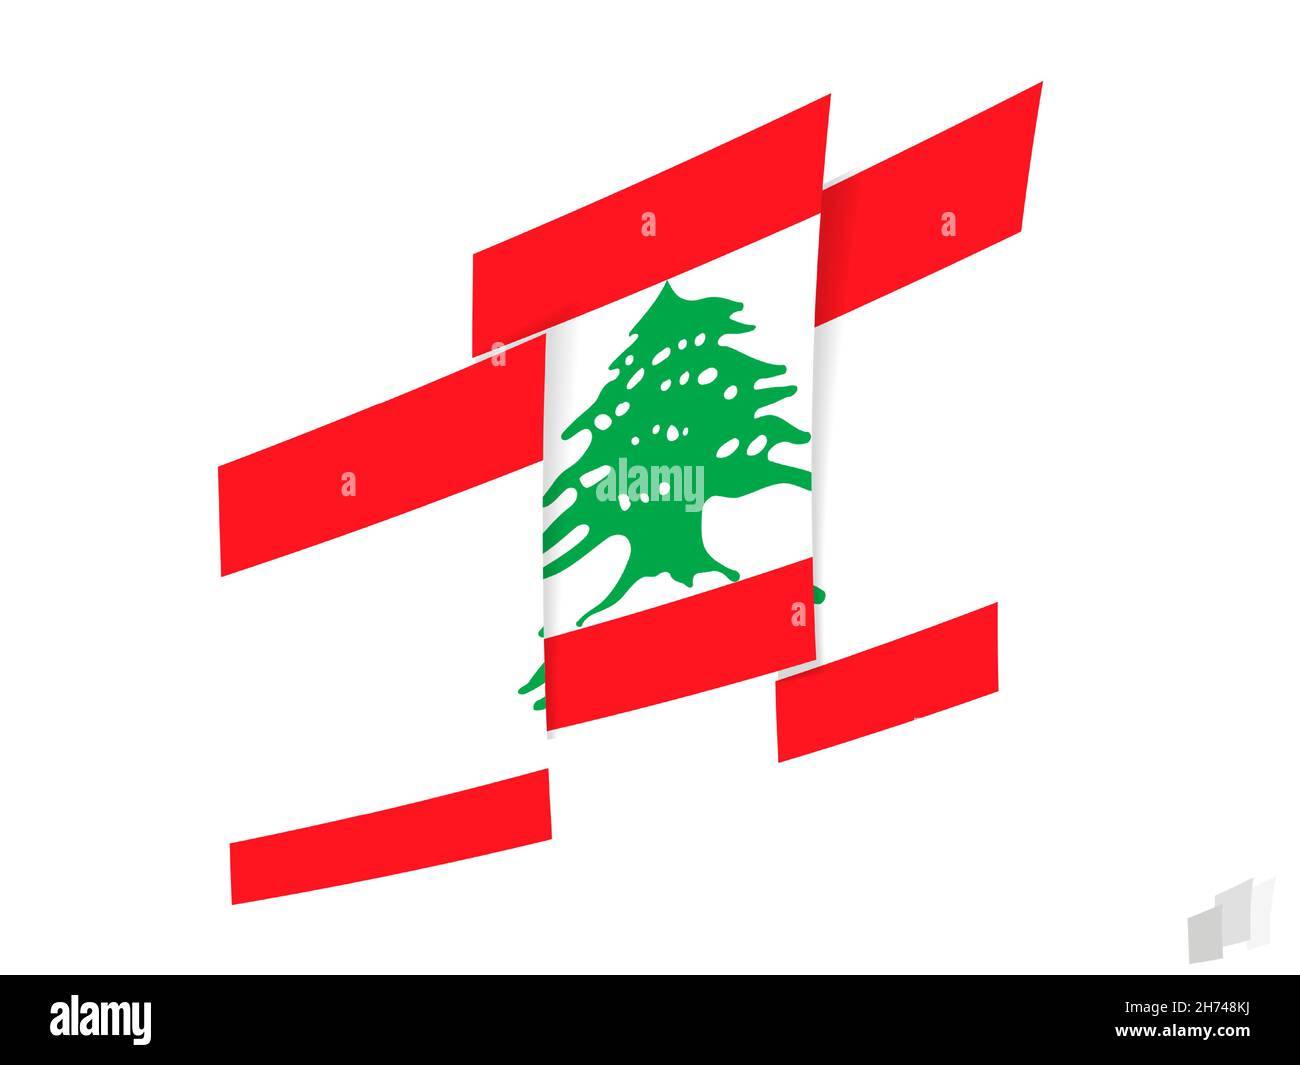 Drapeau libanais dans un motif abstrait déchiré.Design moderne du drapeau libanais.Icône vecteur. Illustration de Vecteur